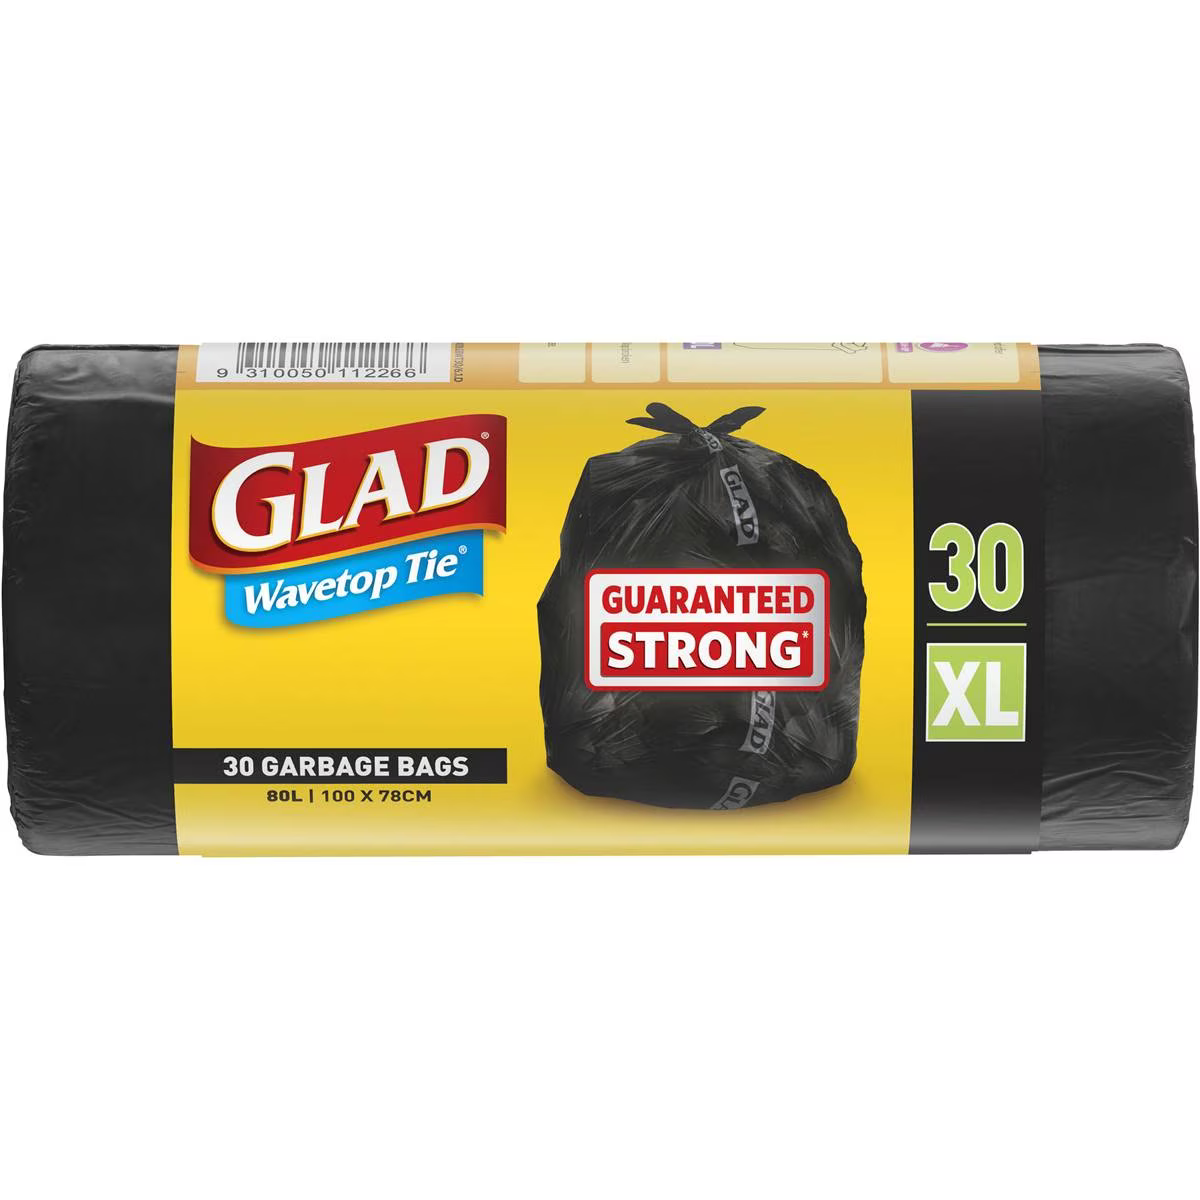 Glad Wavetop Garbage Bag 80 Litres 30 Pack